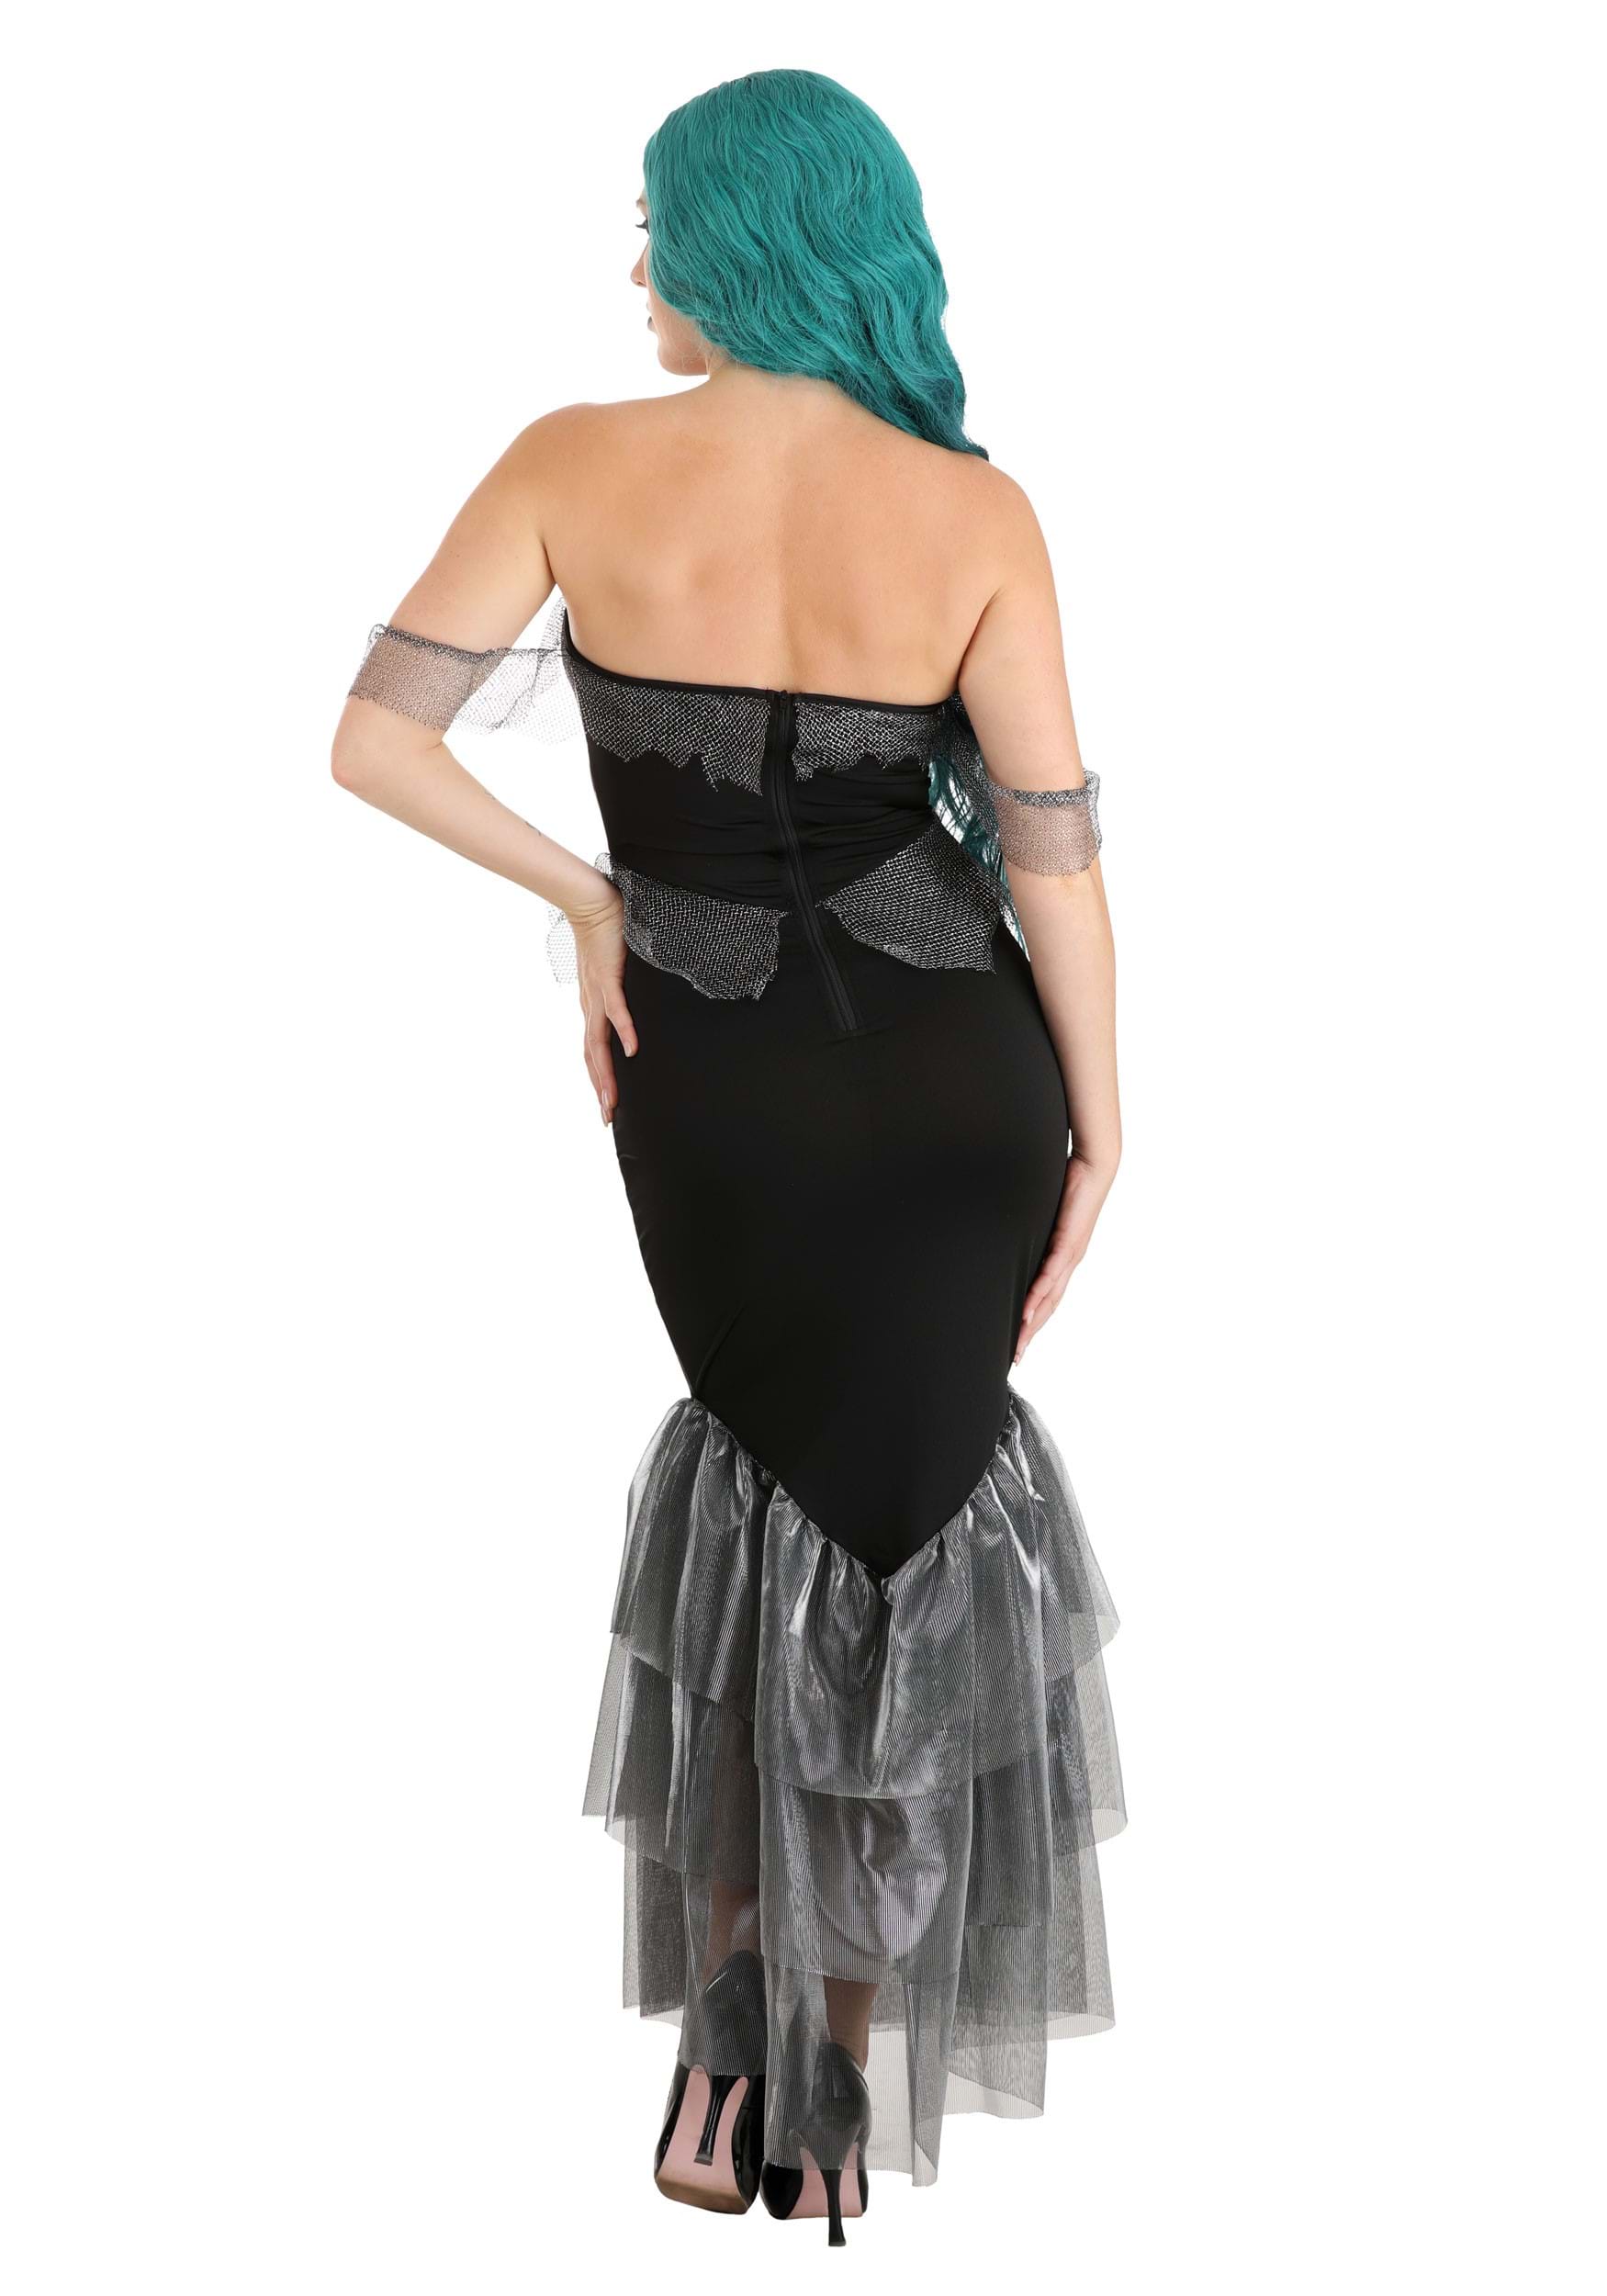 Women's Haunting Siren Fancy Dress Costume